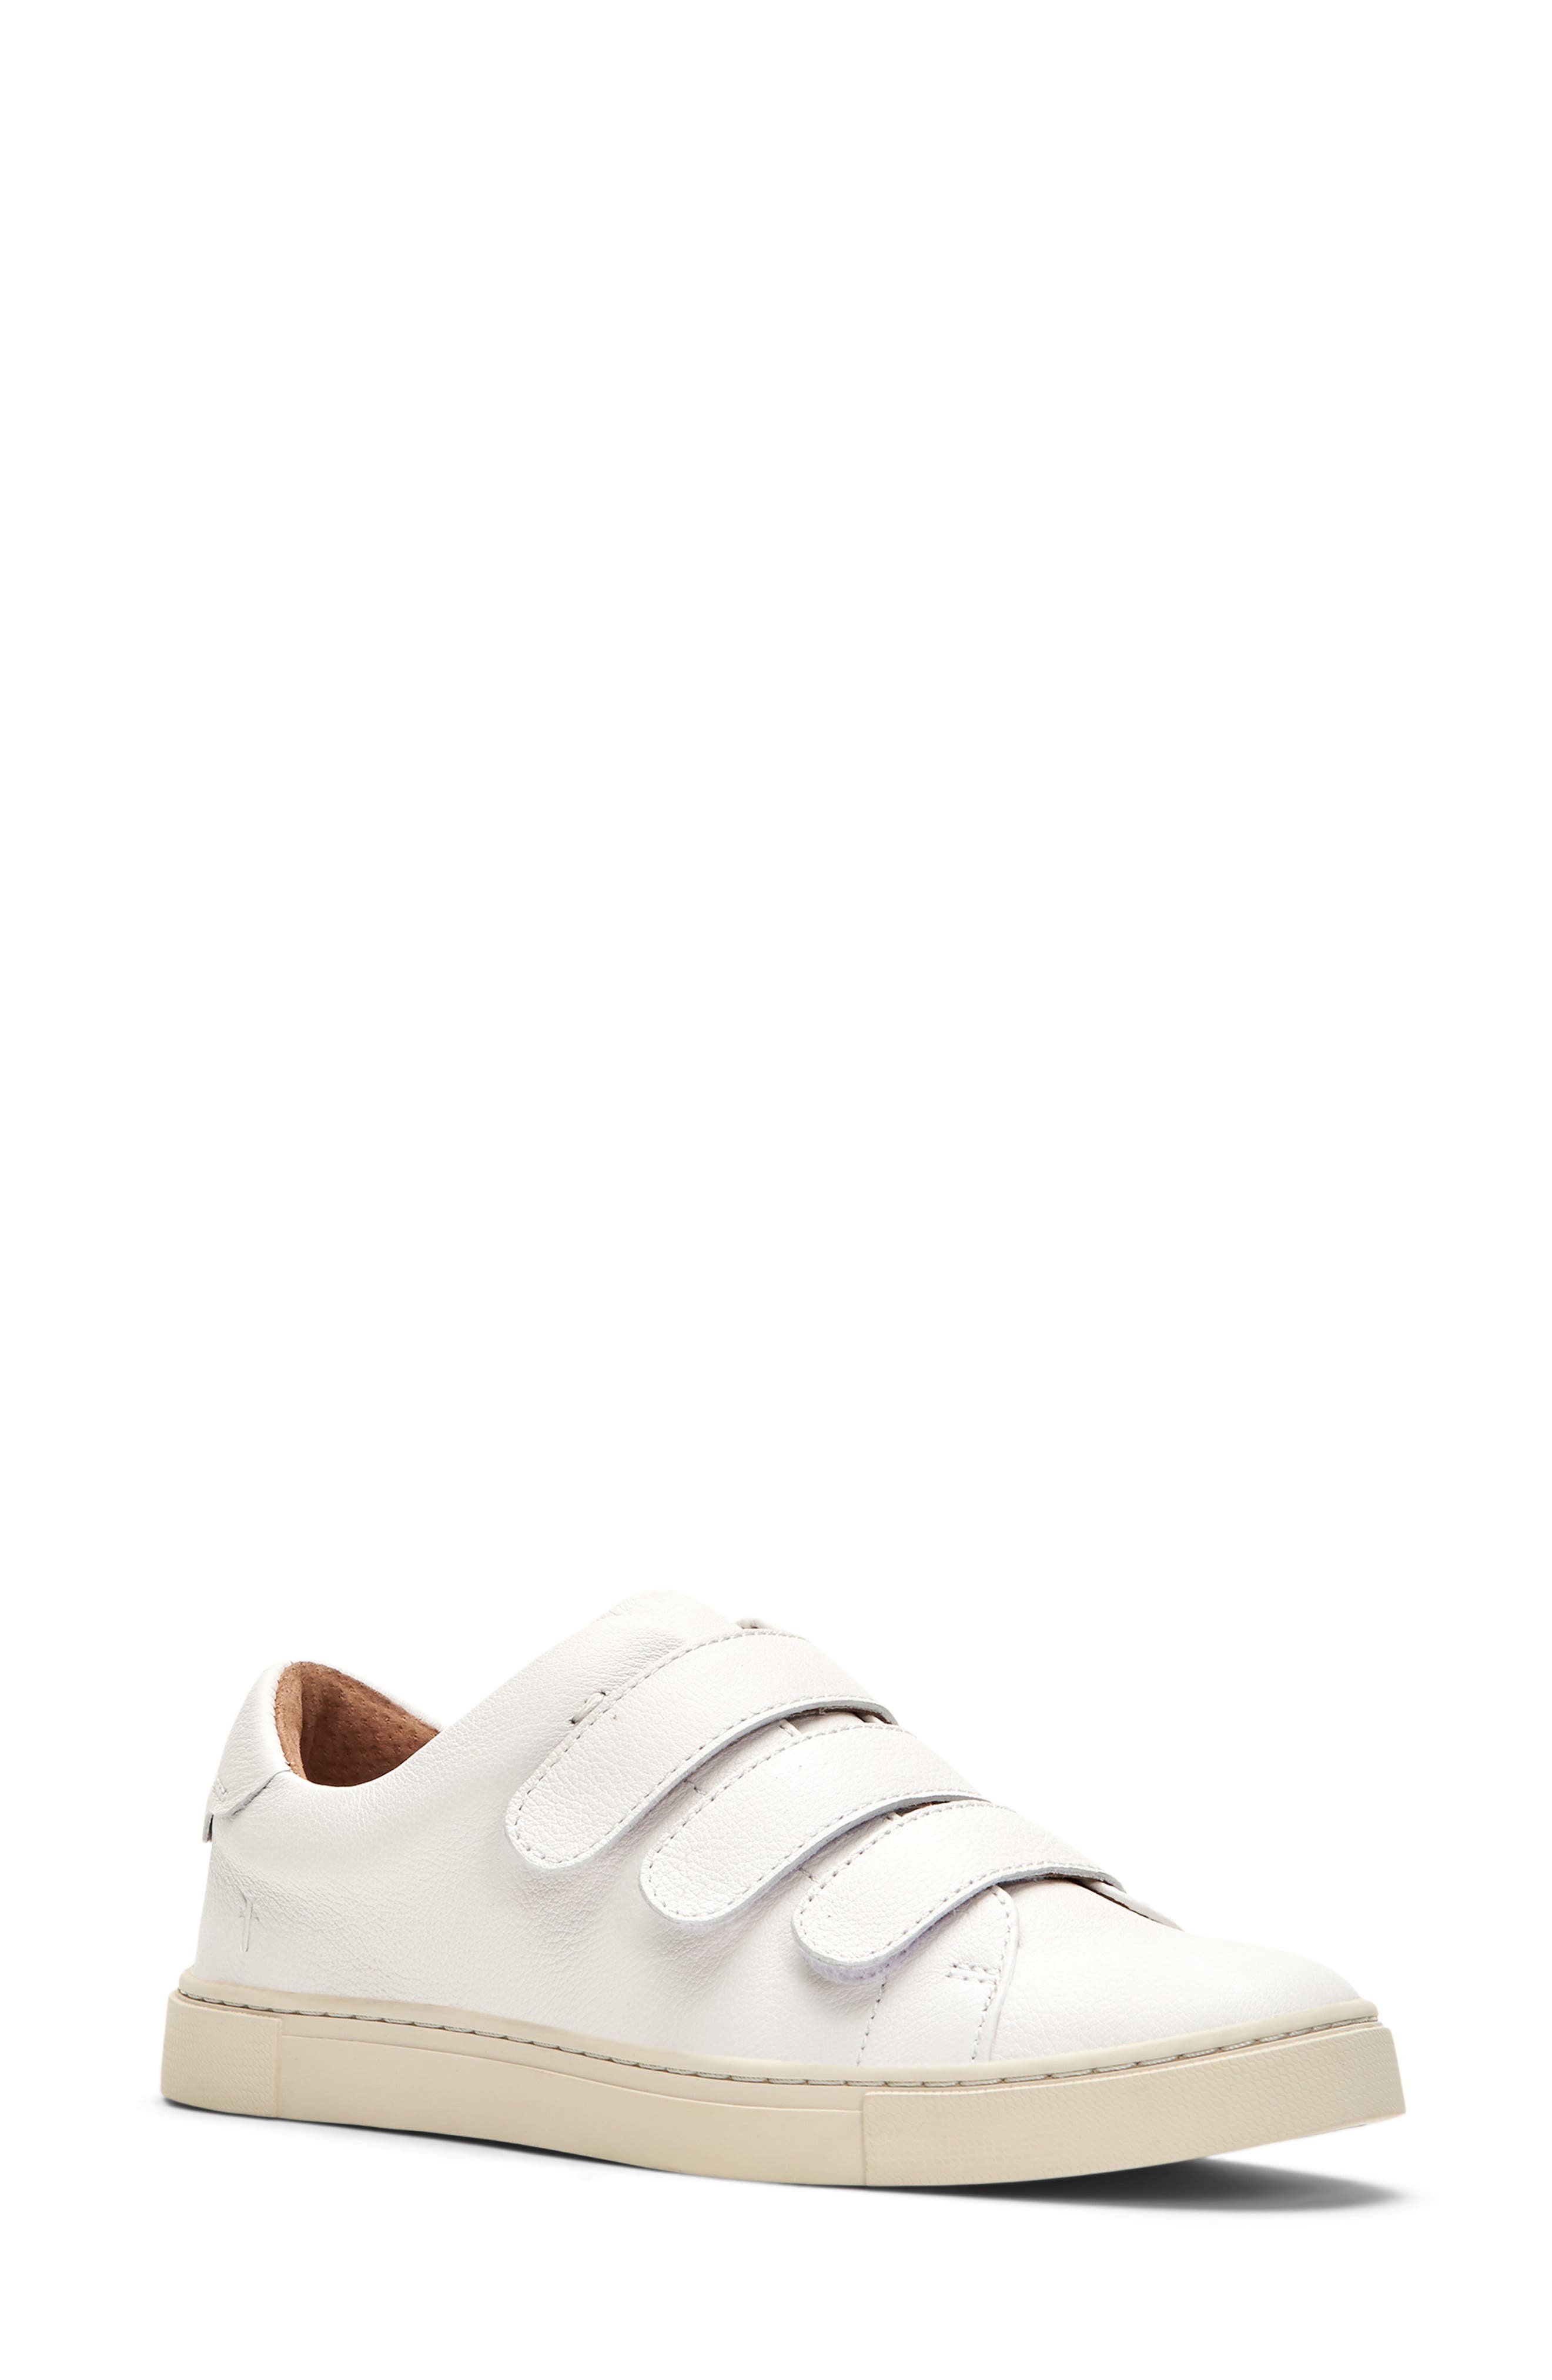 Women's Frye Ivy Strap Sneaker, Size 6 M - White